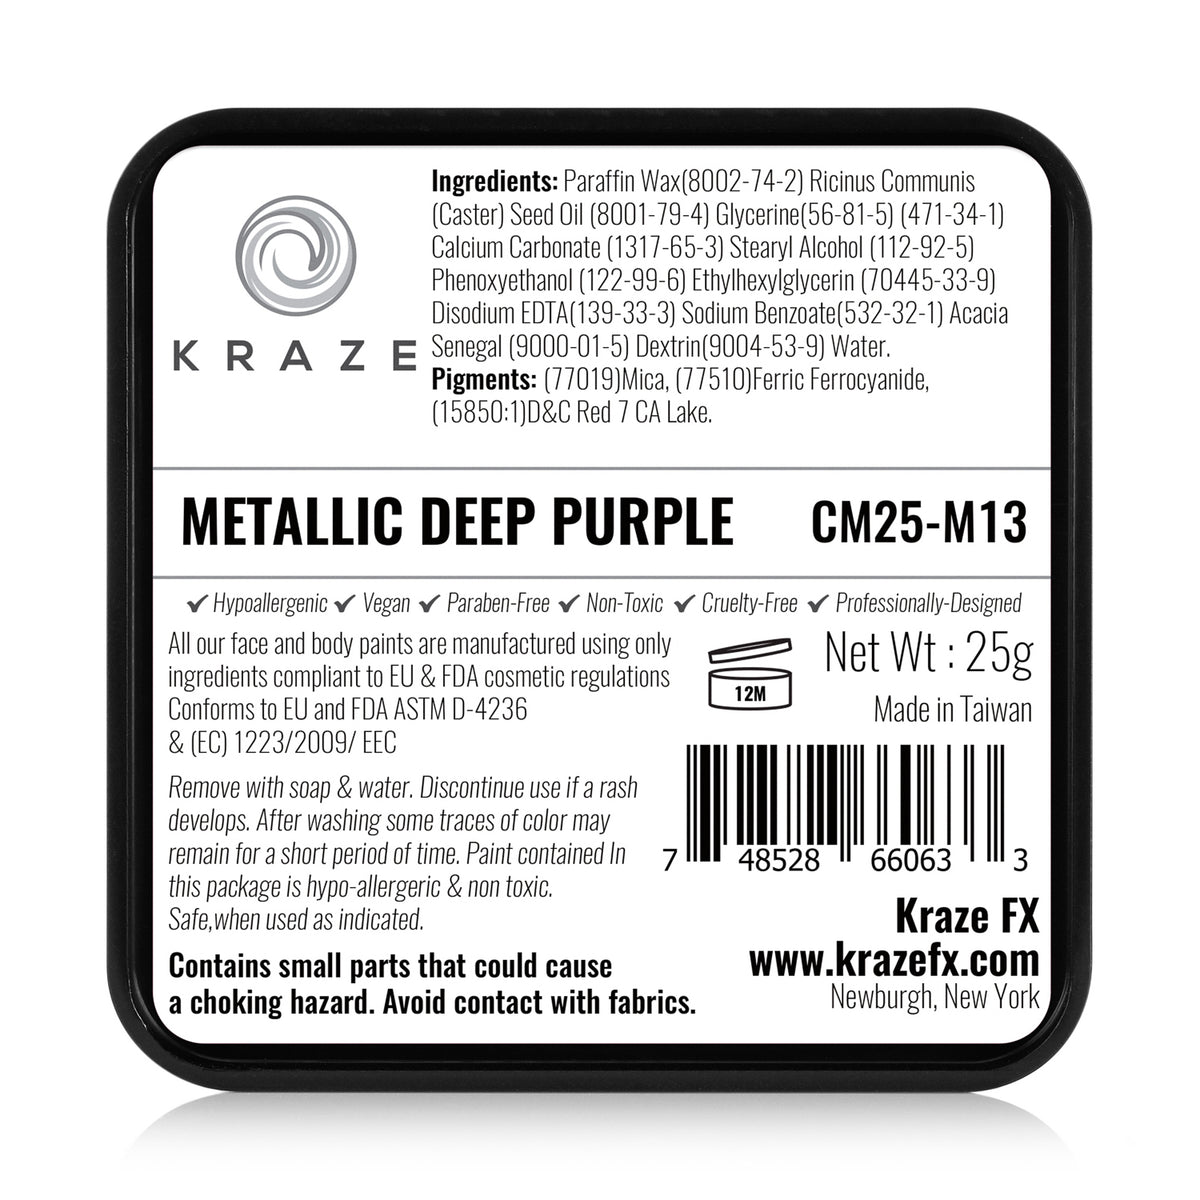 Kraze FX Face Paint - Metallic Deep Purple (25 gm)